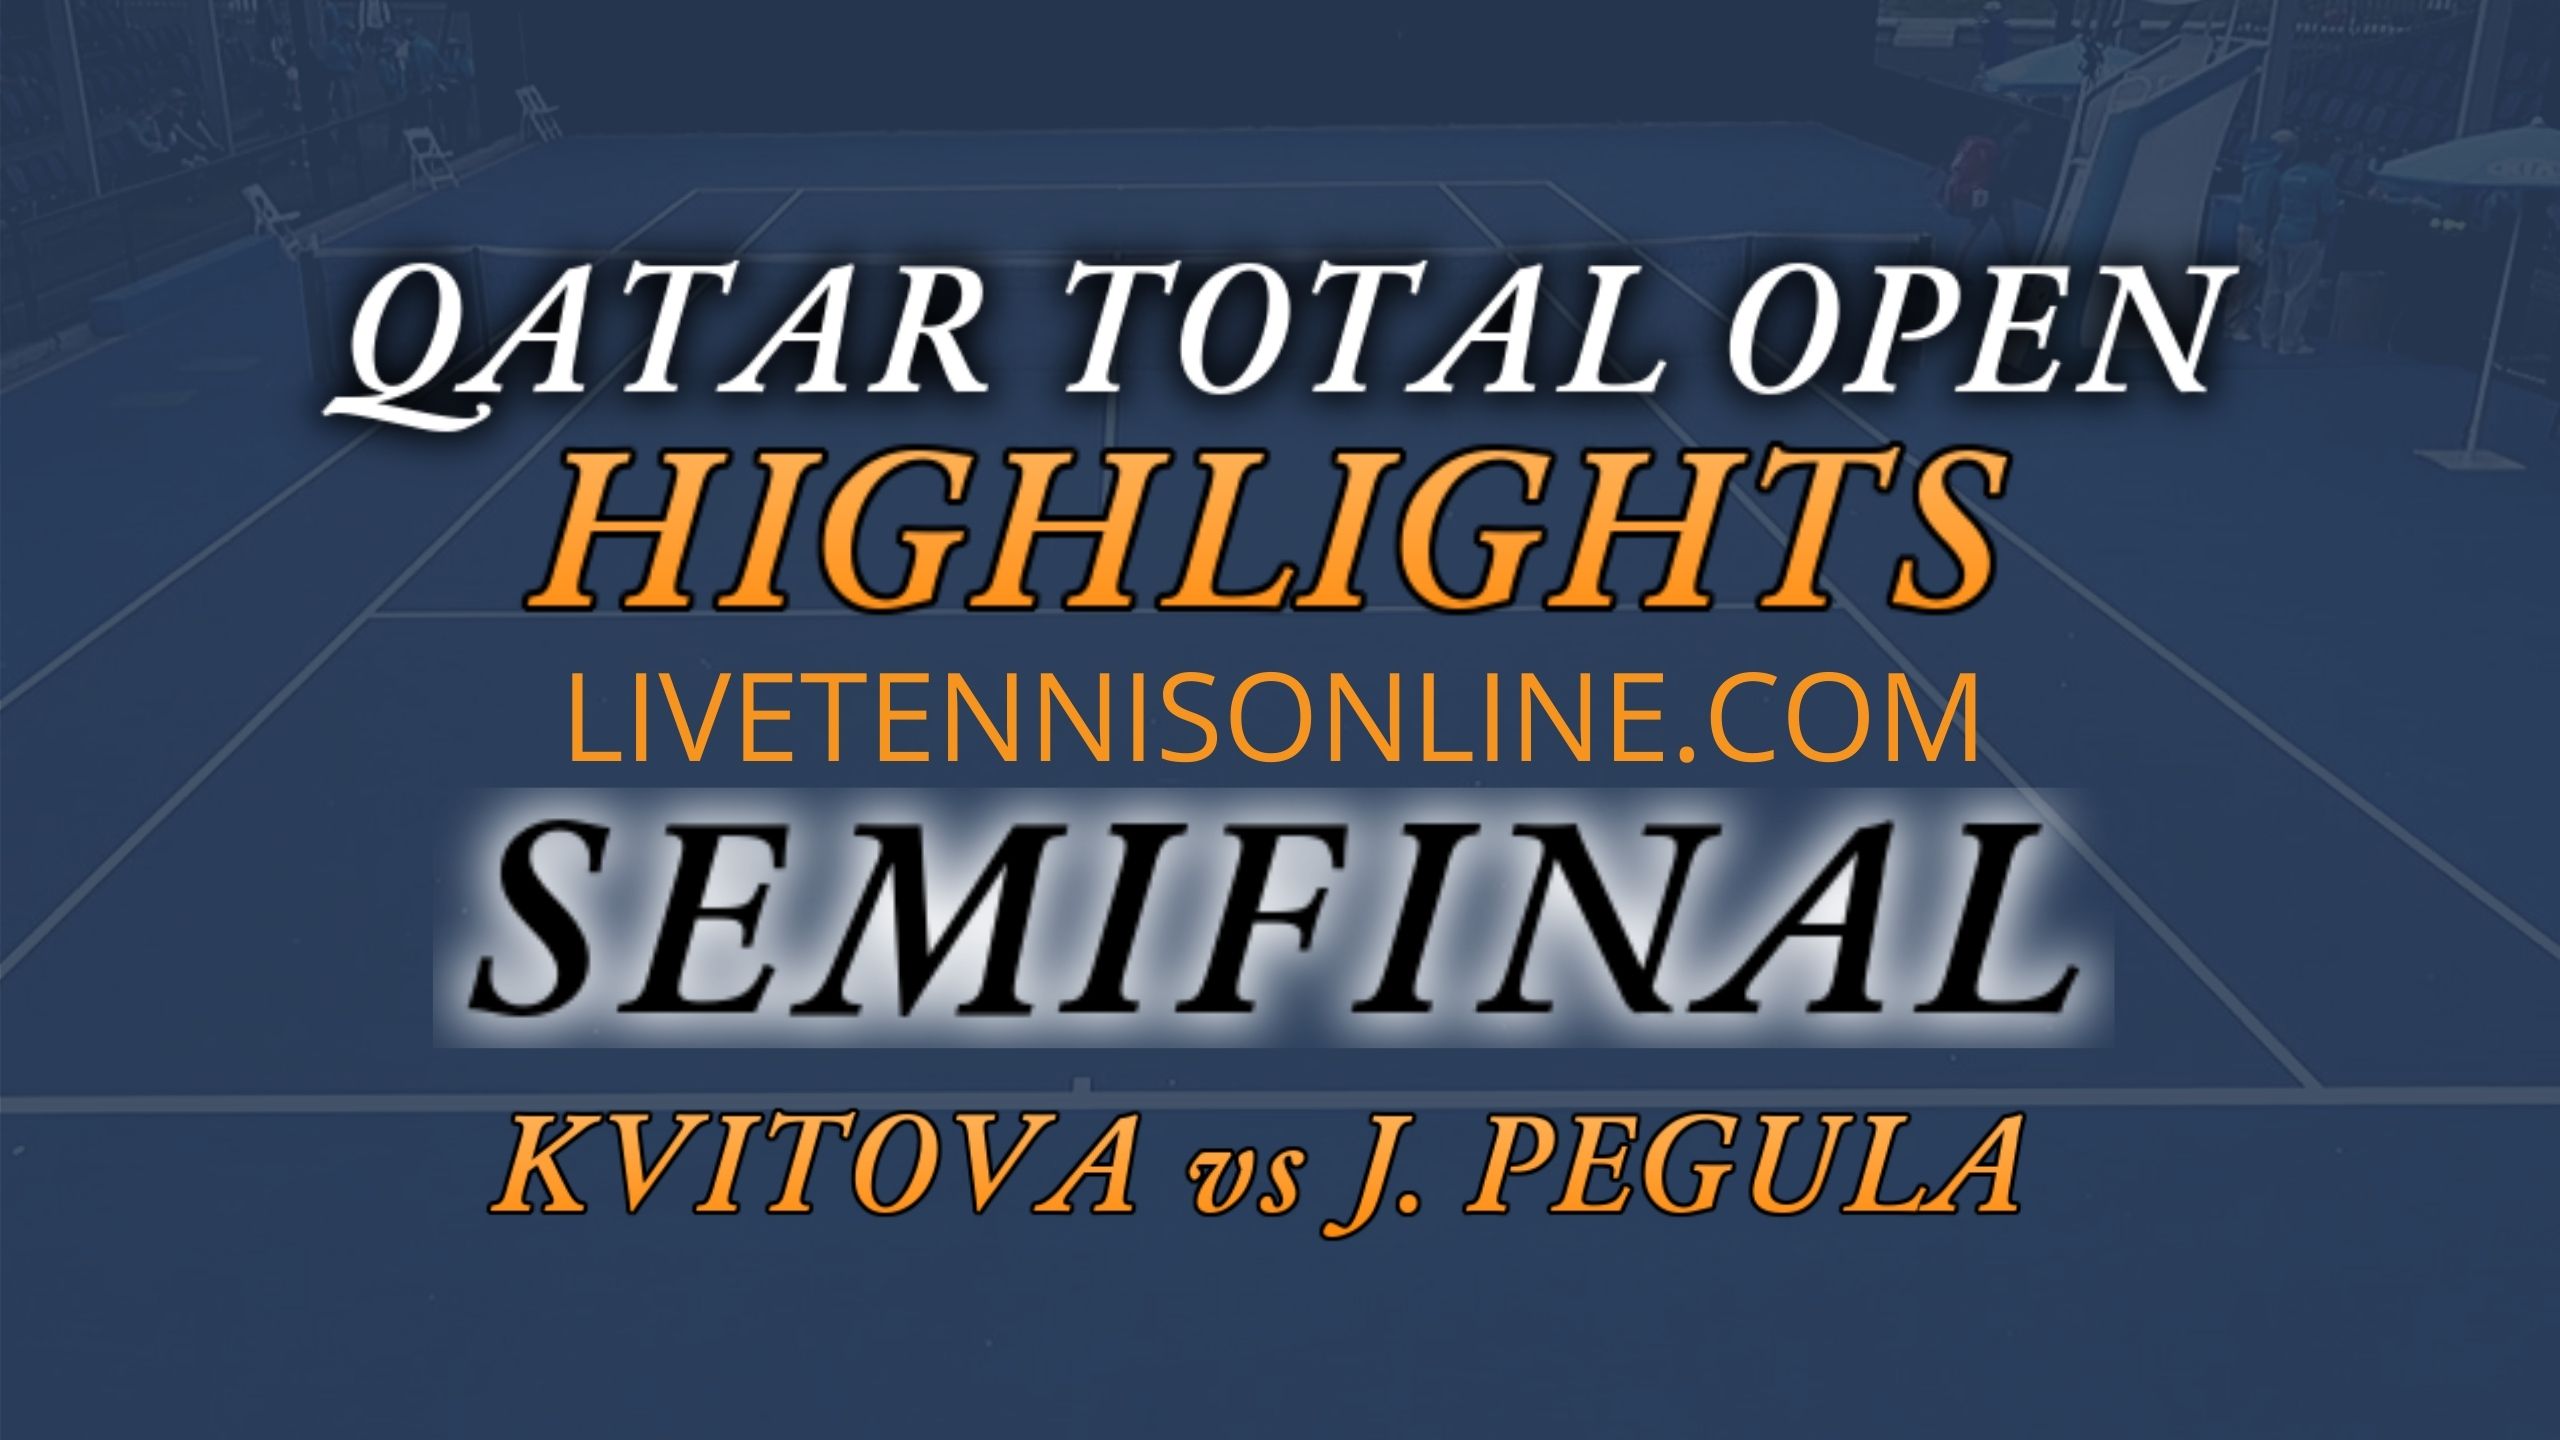 Kvitova Vs Pegula Semi Final Highlights 2021